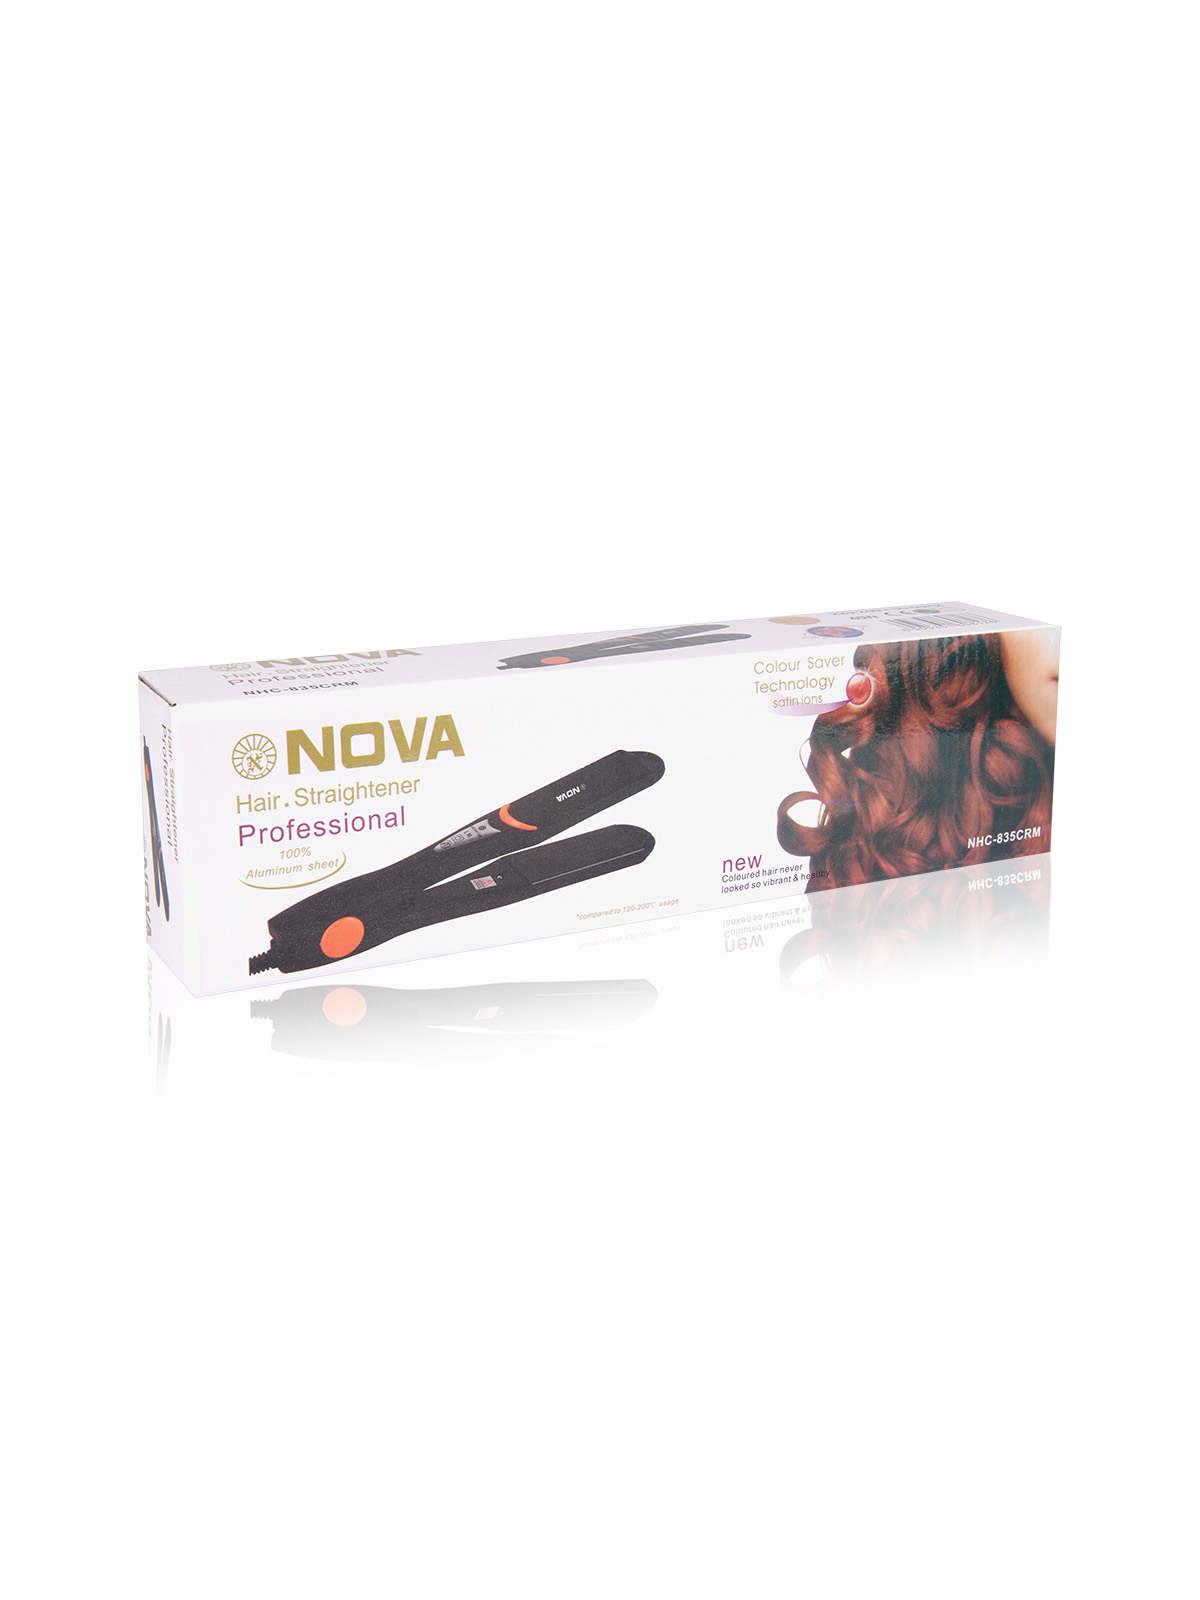 Утюжок для волос NOVA Professional Hair Straightener NHC-835CRM оптом